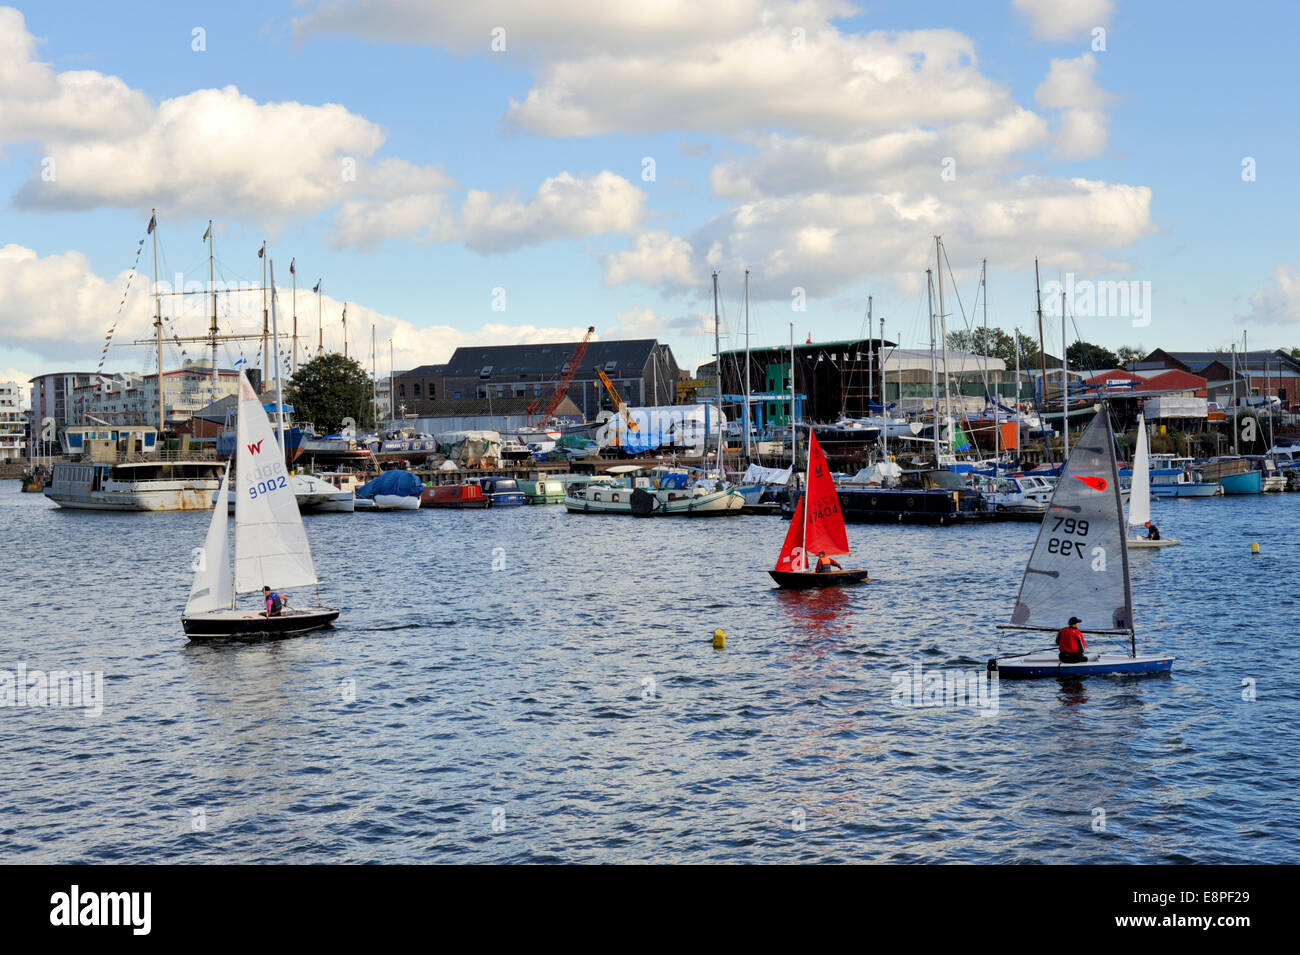 Bristol Stadt-Docks sind eine touristische und Aktivität Bereich geworden. Segelboote im Hafen von Marina. UK Stockfoto